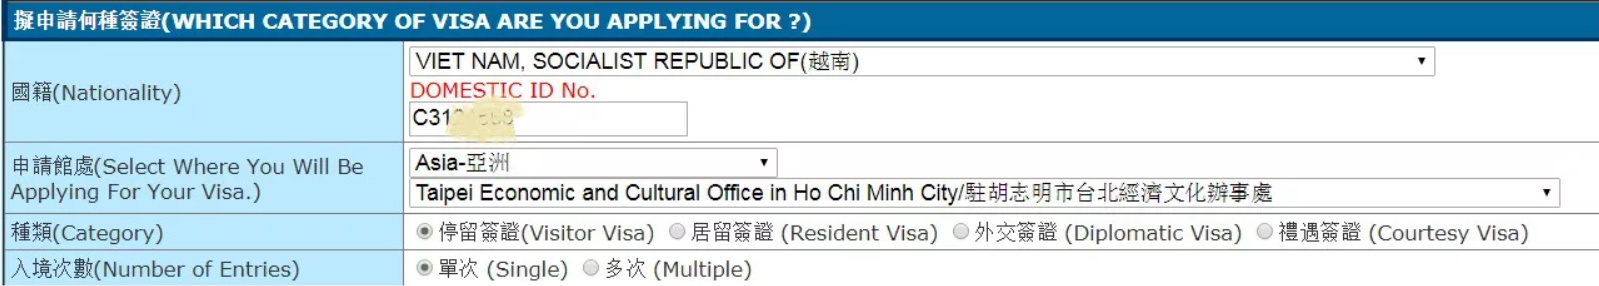 Chọn loại visa - Hướng dẫn điền đơn xin visa Đài Loan online